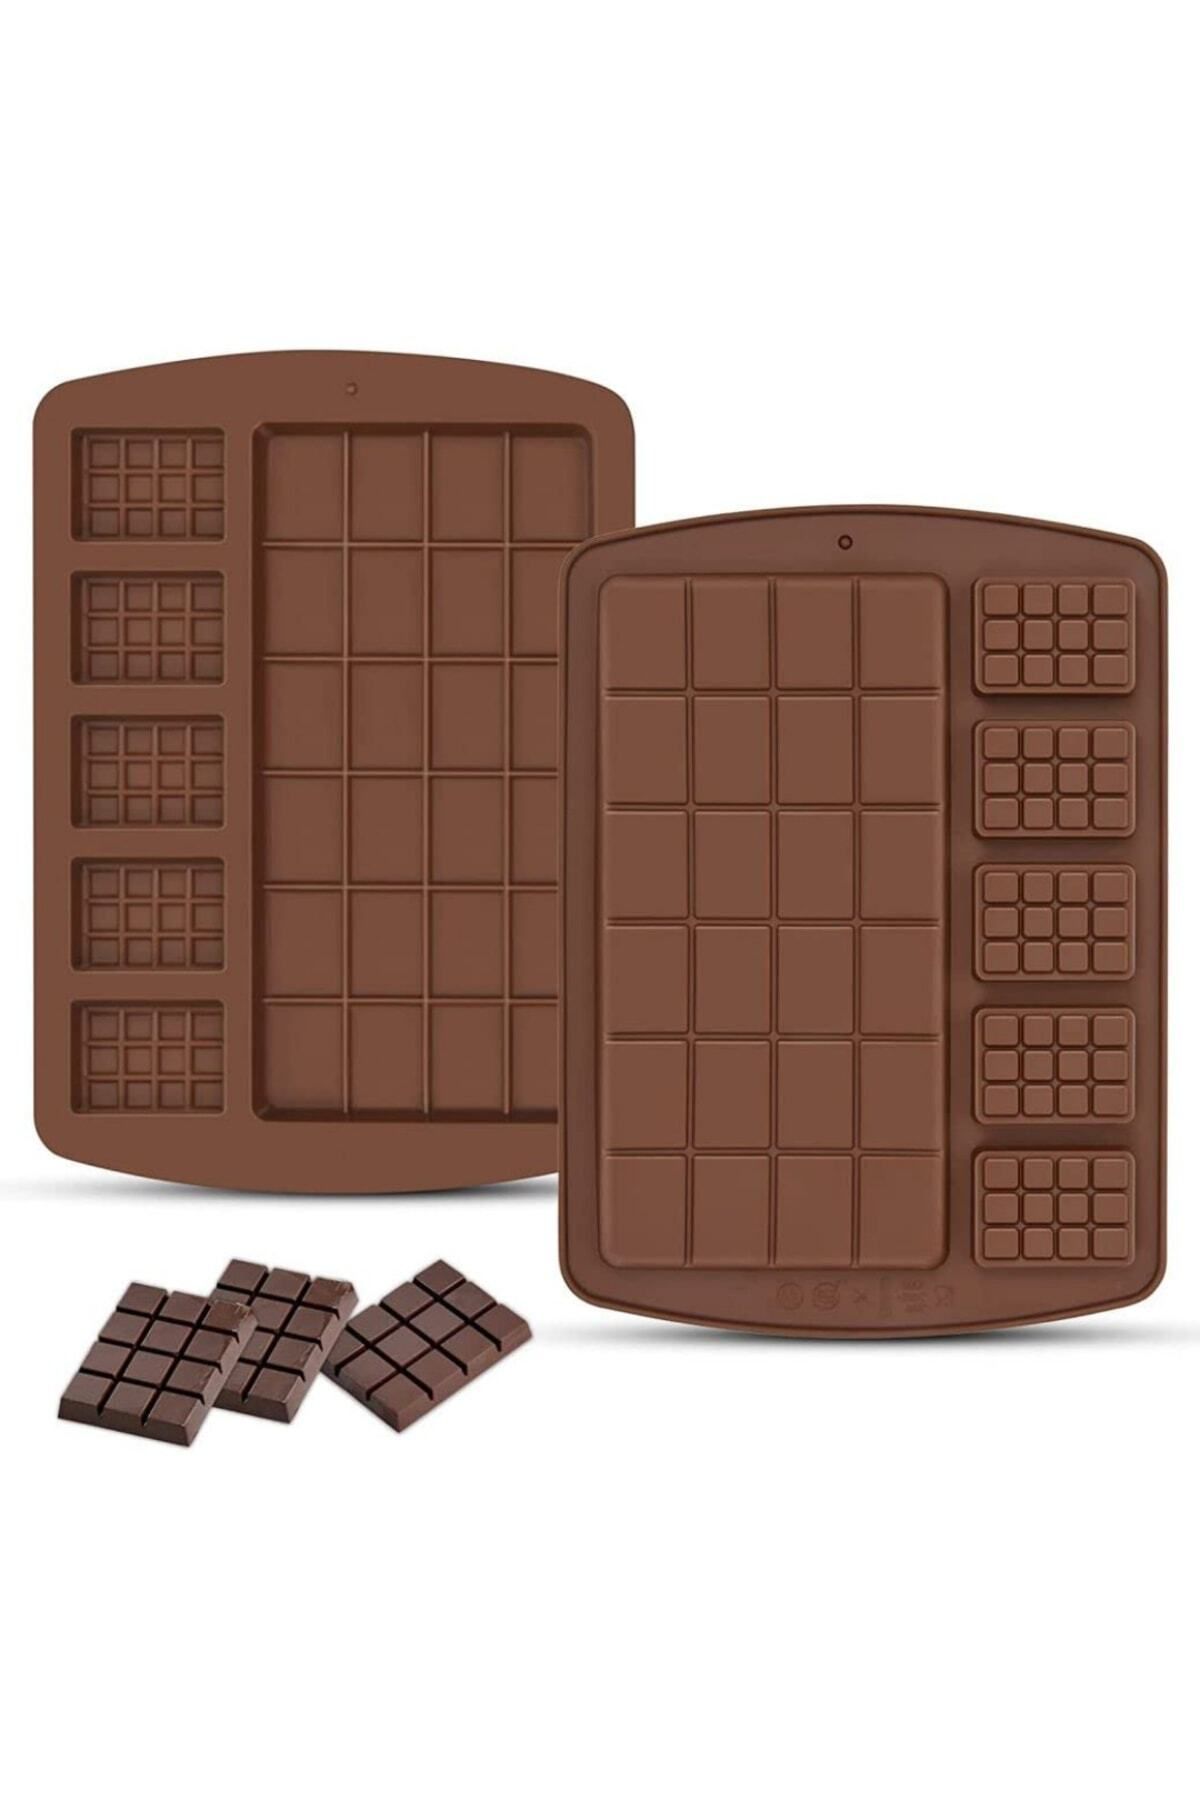 adin tasarım Tablet Çikolata Kalıbı Silikon Kalıp Çikolata Sabun Kokulu Taş Epoksi Kalıbı Mum Buz Silikon Kalıbı